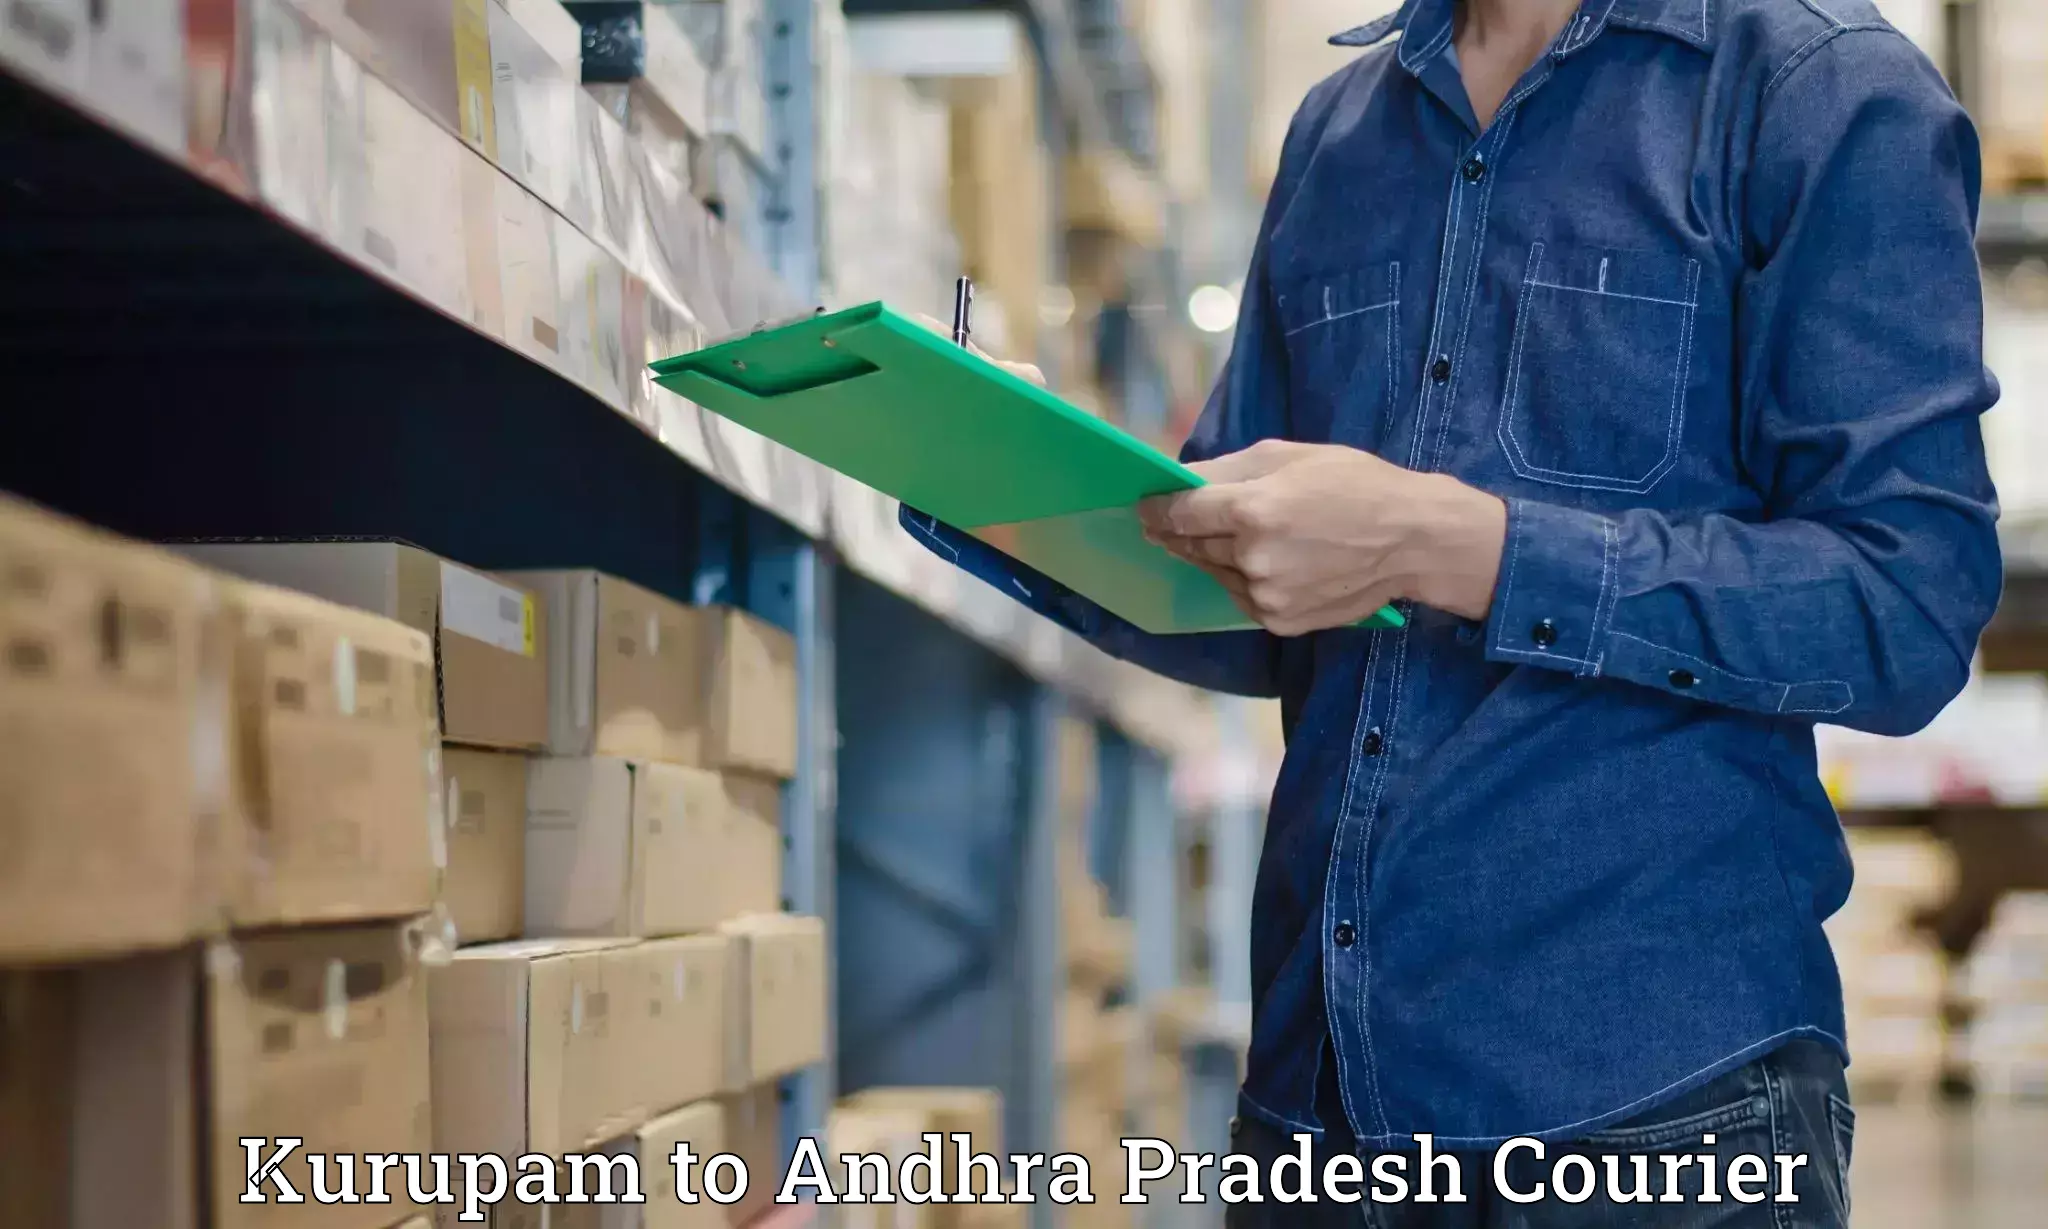 Small business couriers Kurupam to Yerravaram